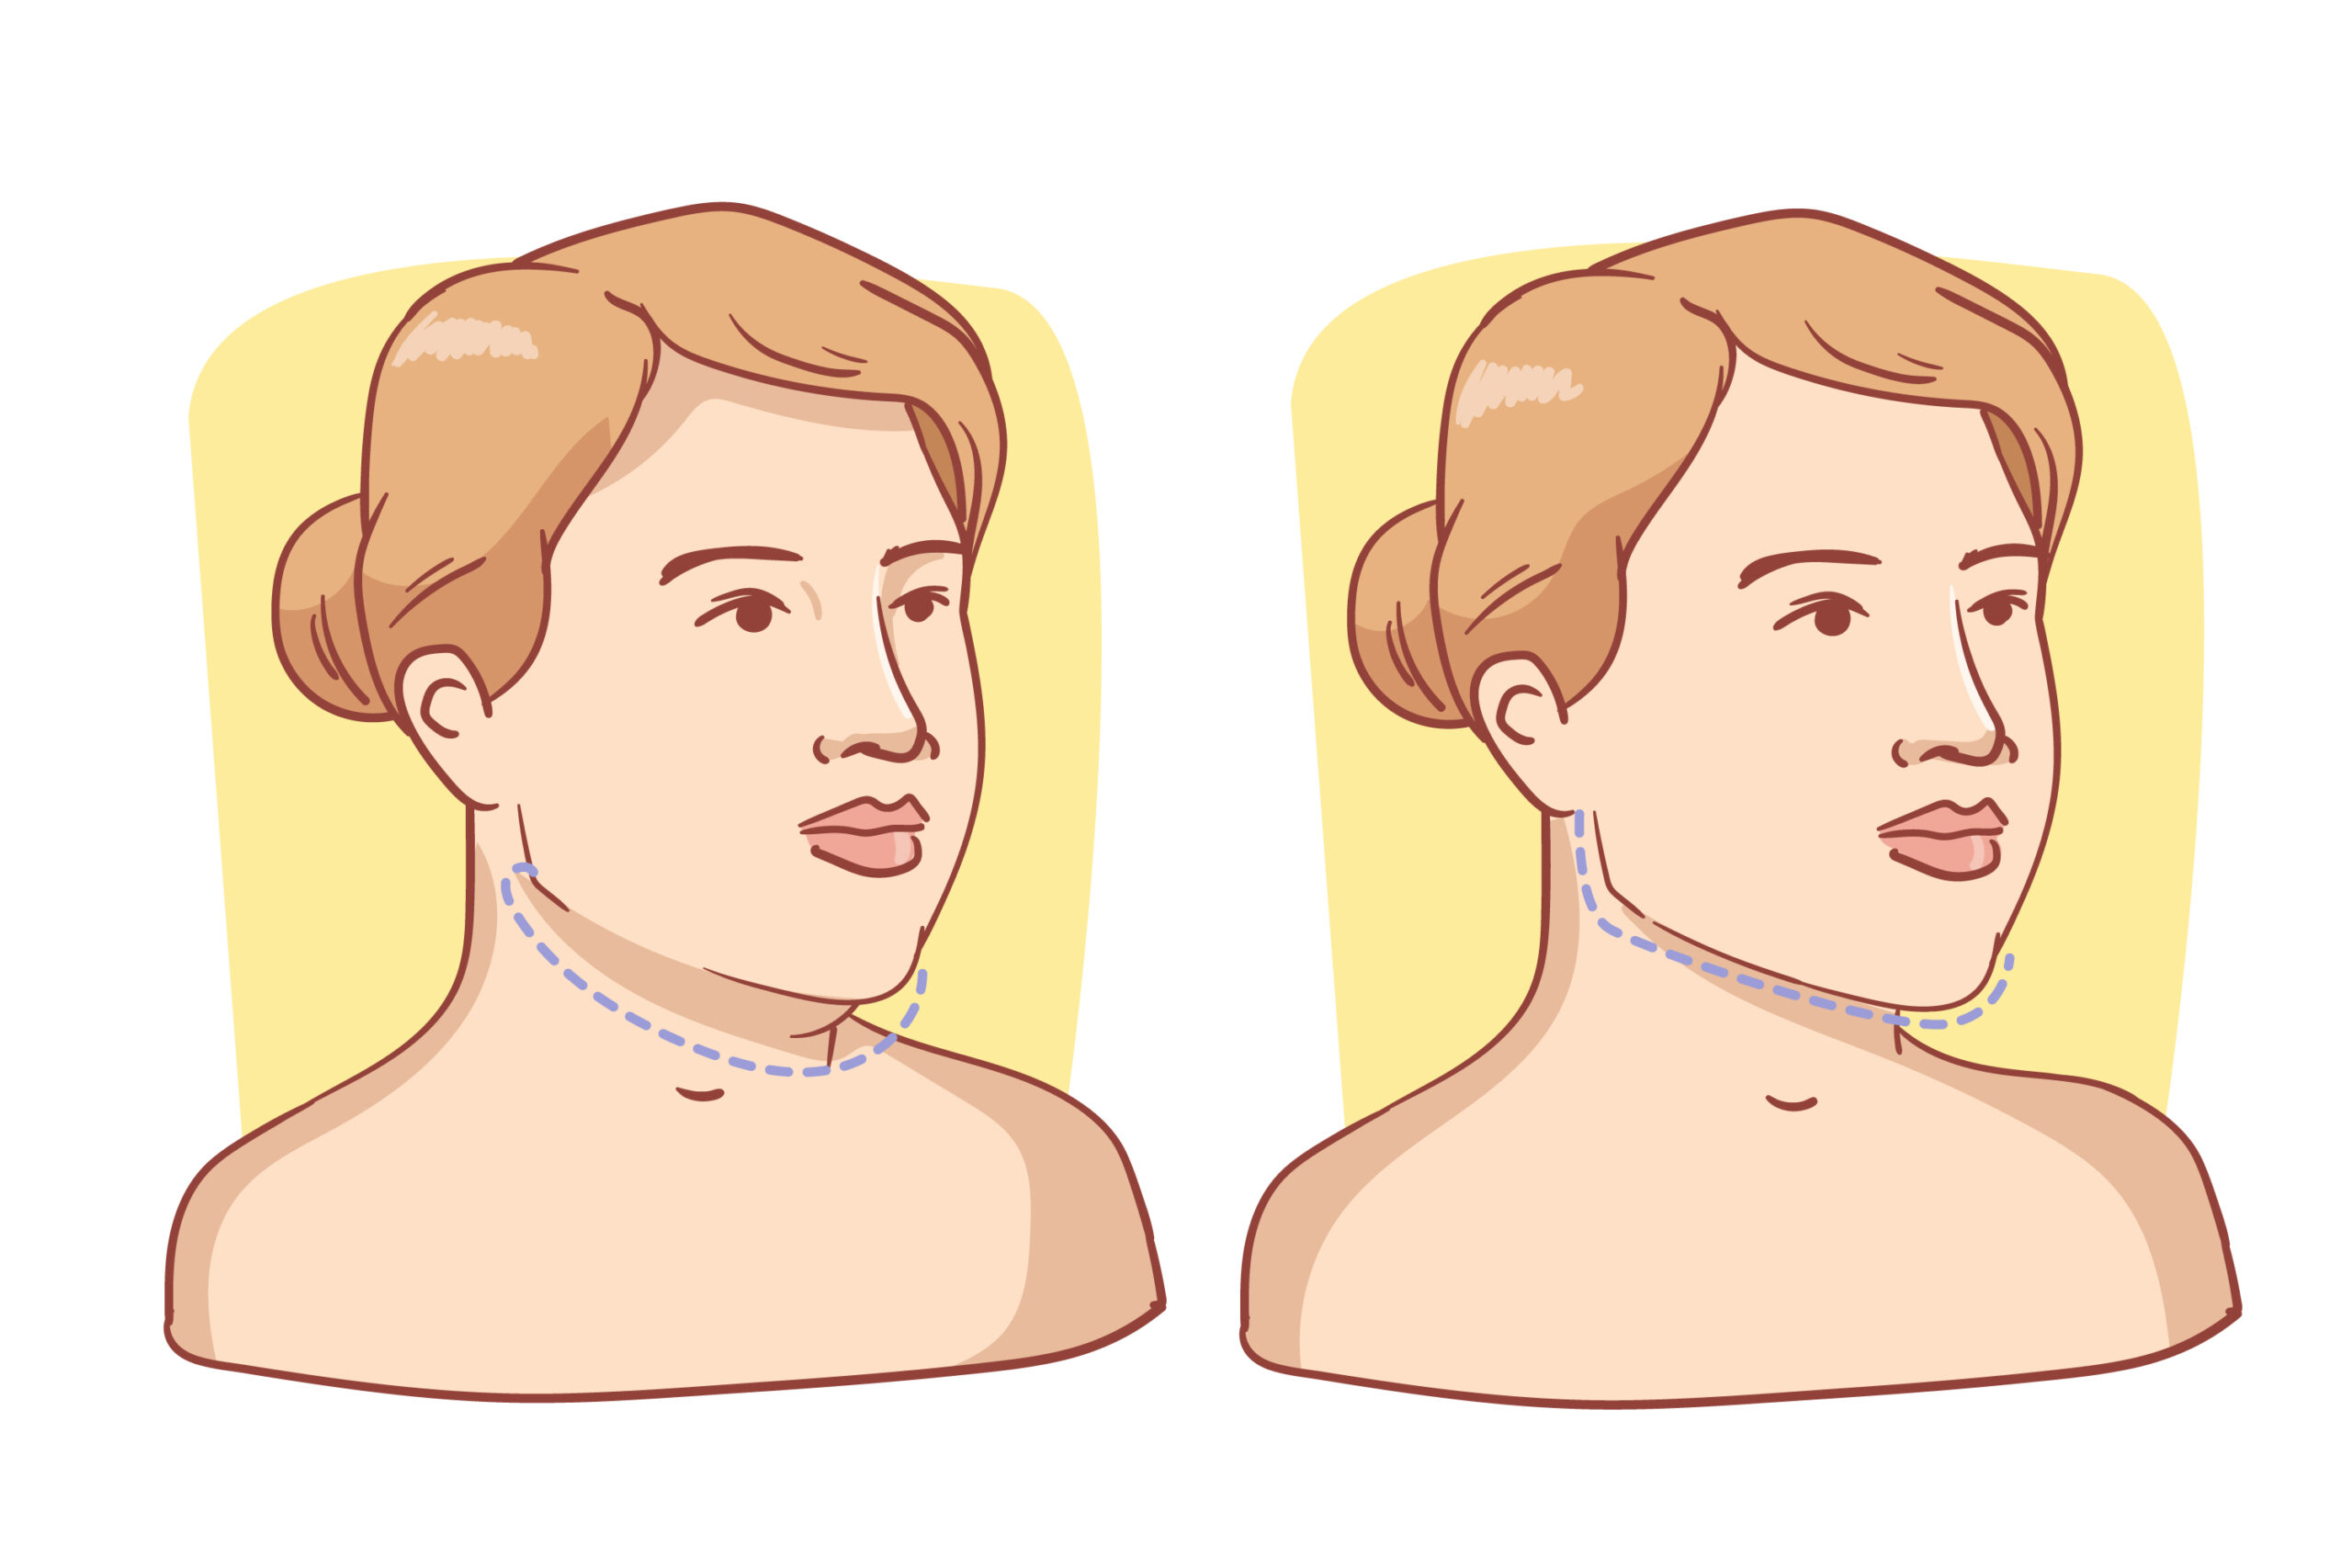 necklift surgery